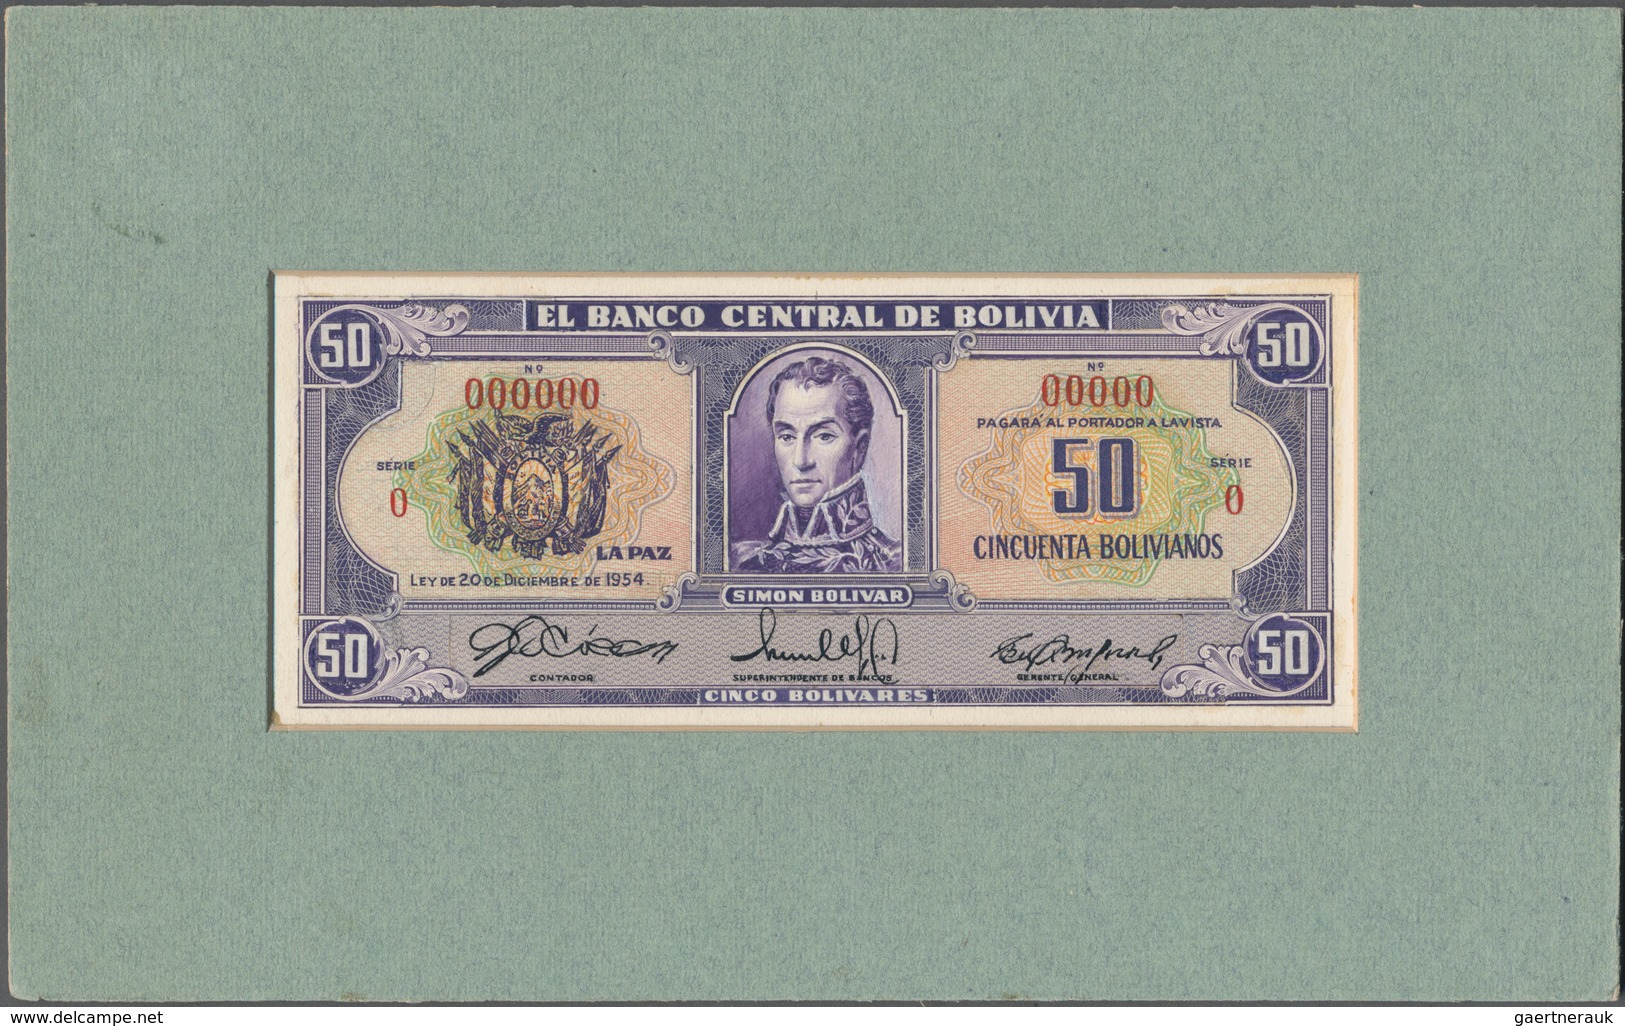 Bolivia / Bolivien: El Banco Central De Bolivia Design Proof Of 50 Bolivares For An Unissued Series - Bolivia